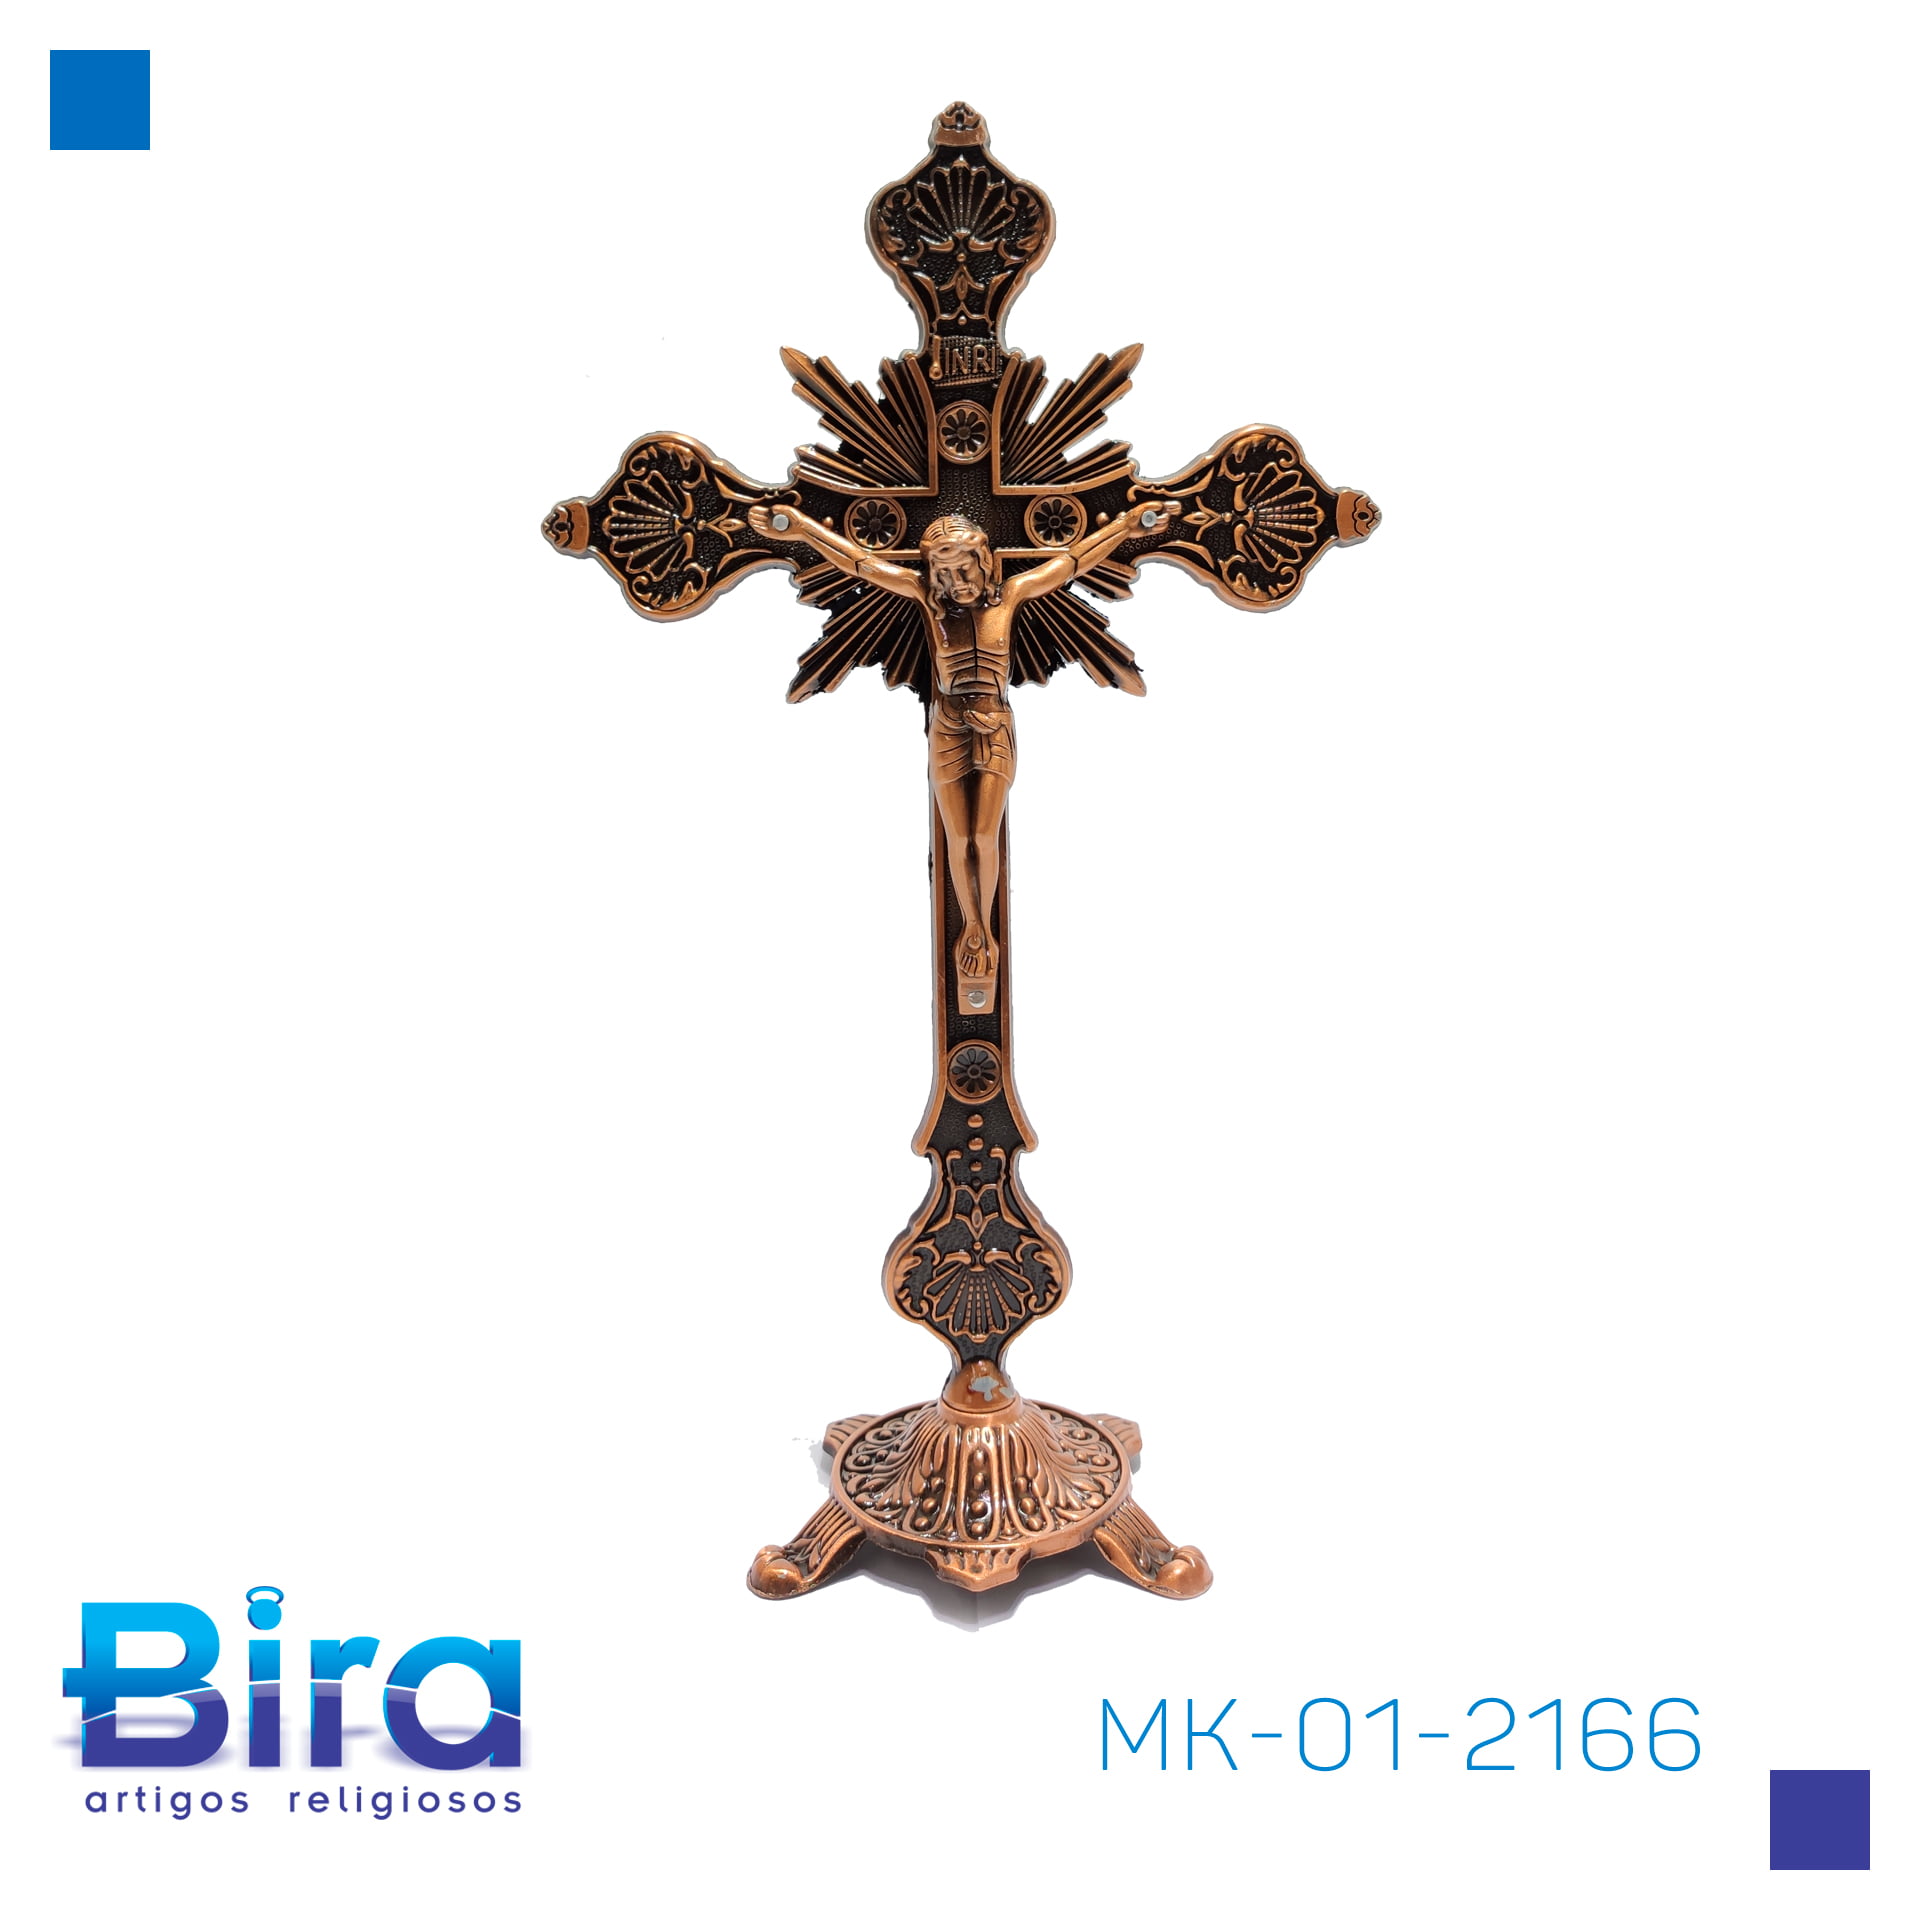 Bira Artigos Religiosos - CRUCIFIXO DE MESA BRONZE 32 CM - Cód. MK-01-2166